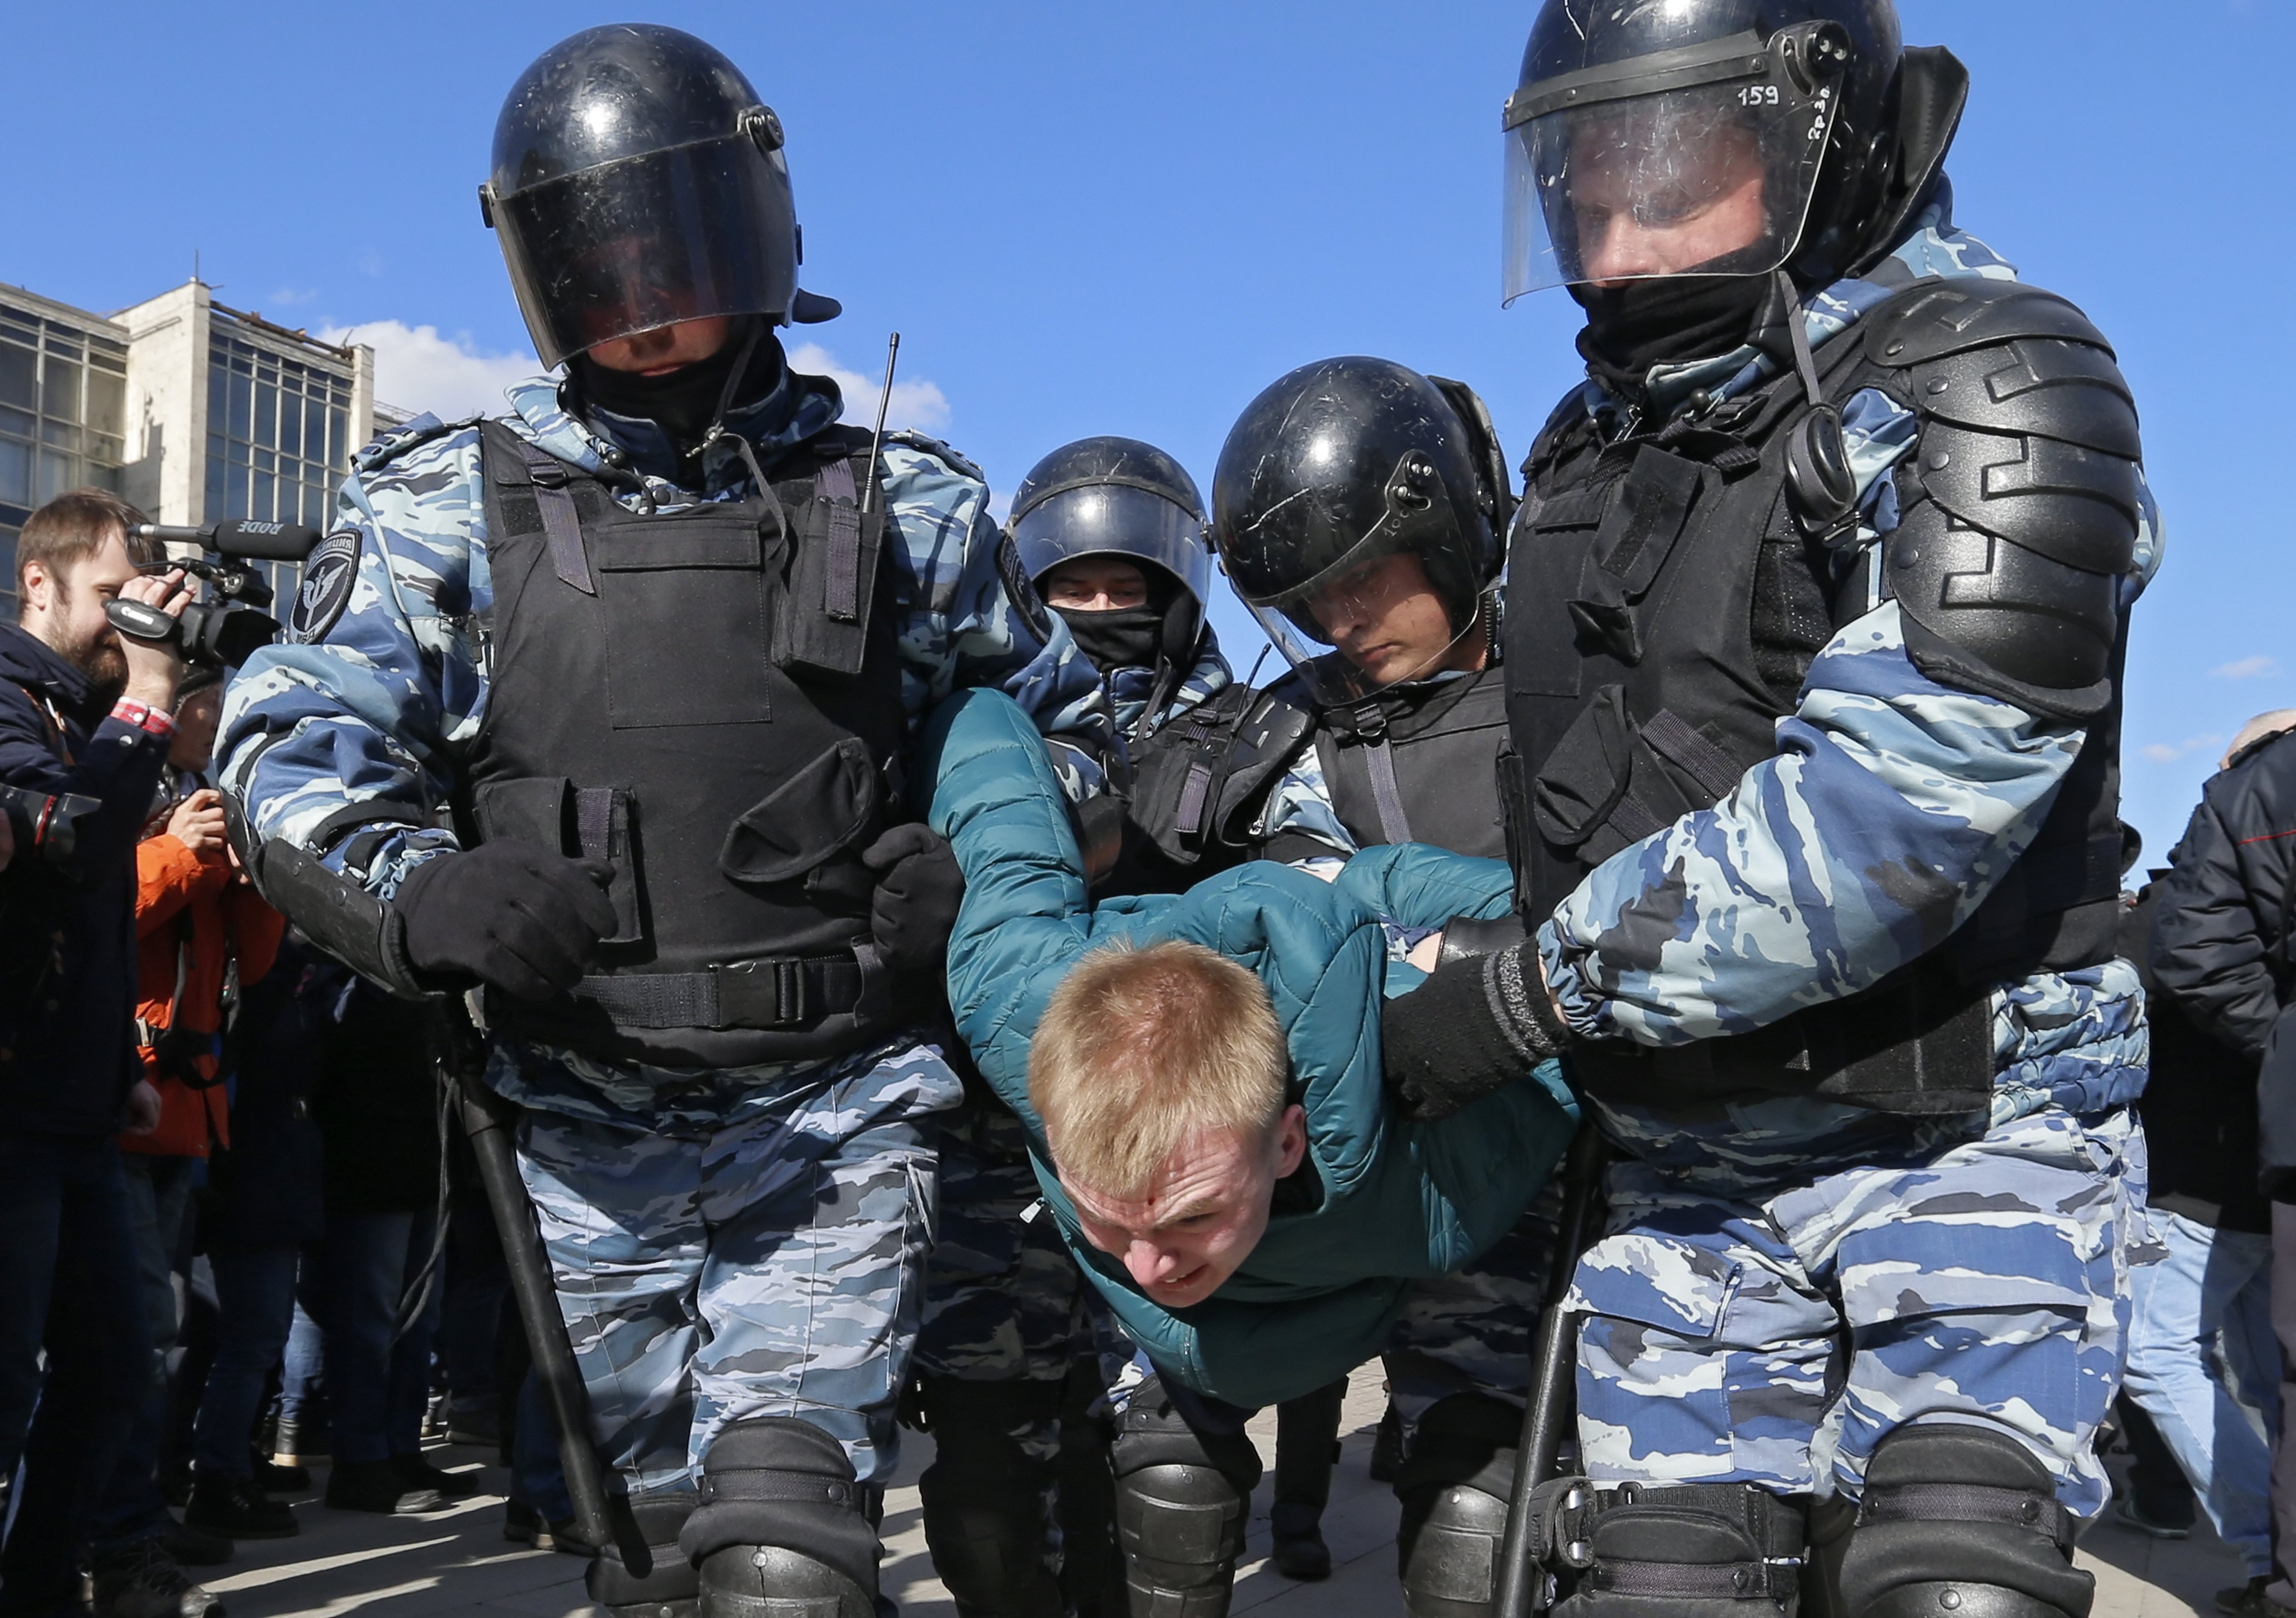 Стотици граждани са арестувани заради участието си в антикорупционни протести в руската столица Москва. Сред тях е и видният критик на Кремъл Алексей Навални. Над 7000 души са се включили в протеста. Полицията съобщи, че в Москва са арестувани около 500 души, но според неправителствена организация, специализирана в наблюдението на протести, задържаните са най-малко 933. Навални апелира за масови демонстрации след подробен доклад по-рано този месец, обвиняващ премиера Дмитрий Медведев в редовно използване на разкошните резиденции в централната част на Русия и на Черноморското крайбрежие.